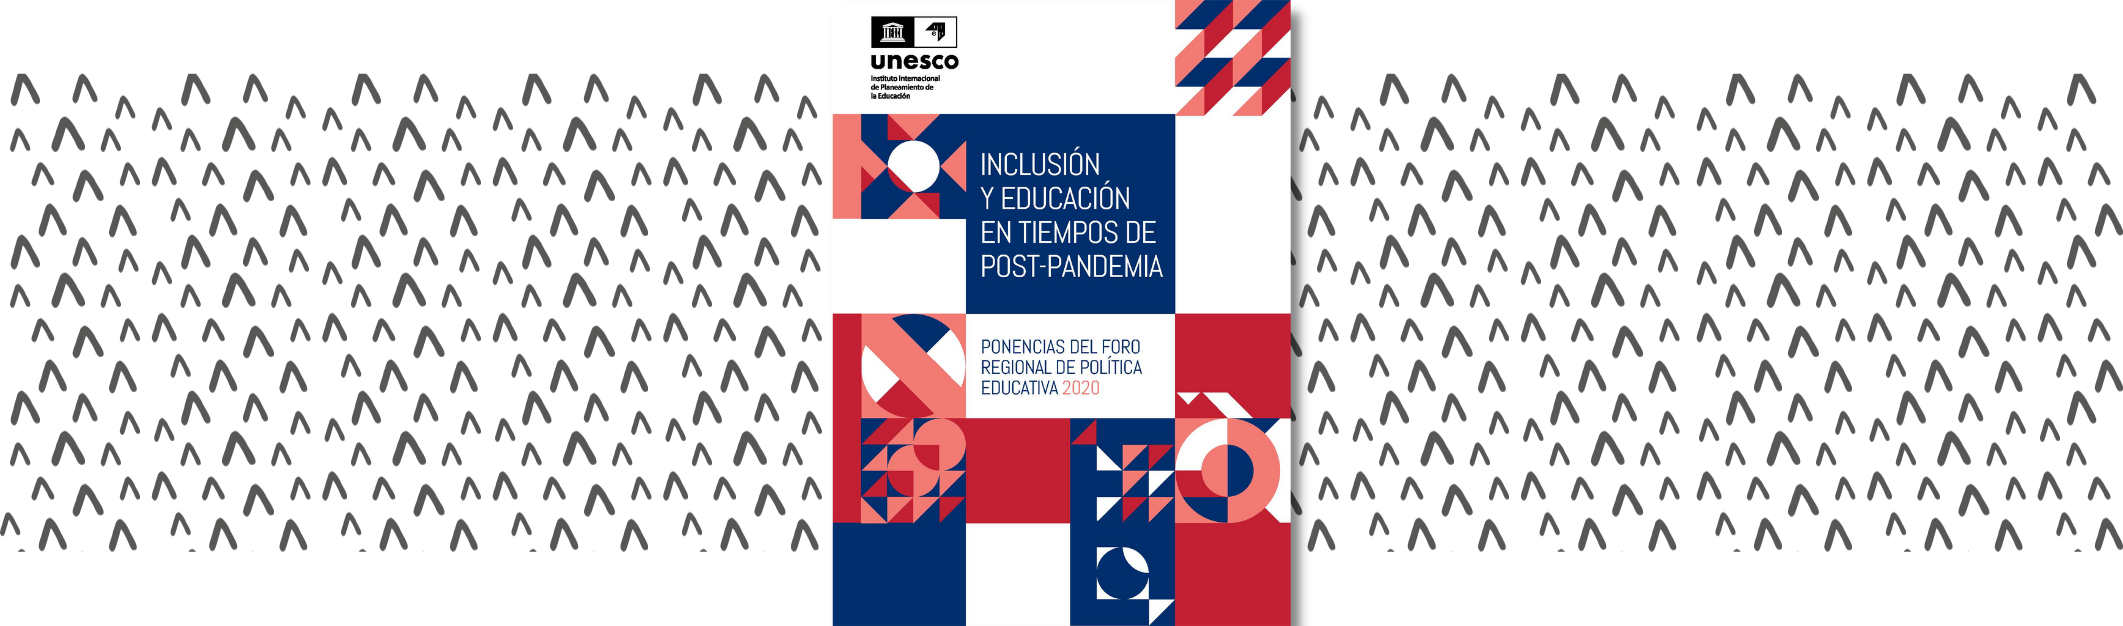 Inclusión y educación en tiempos de post-pandemia: ponencias del Foro Regional de Política Educativa 2020